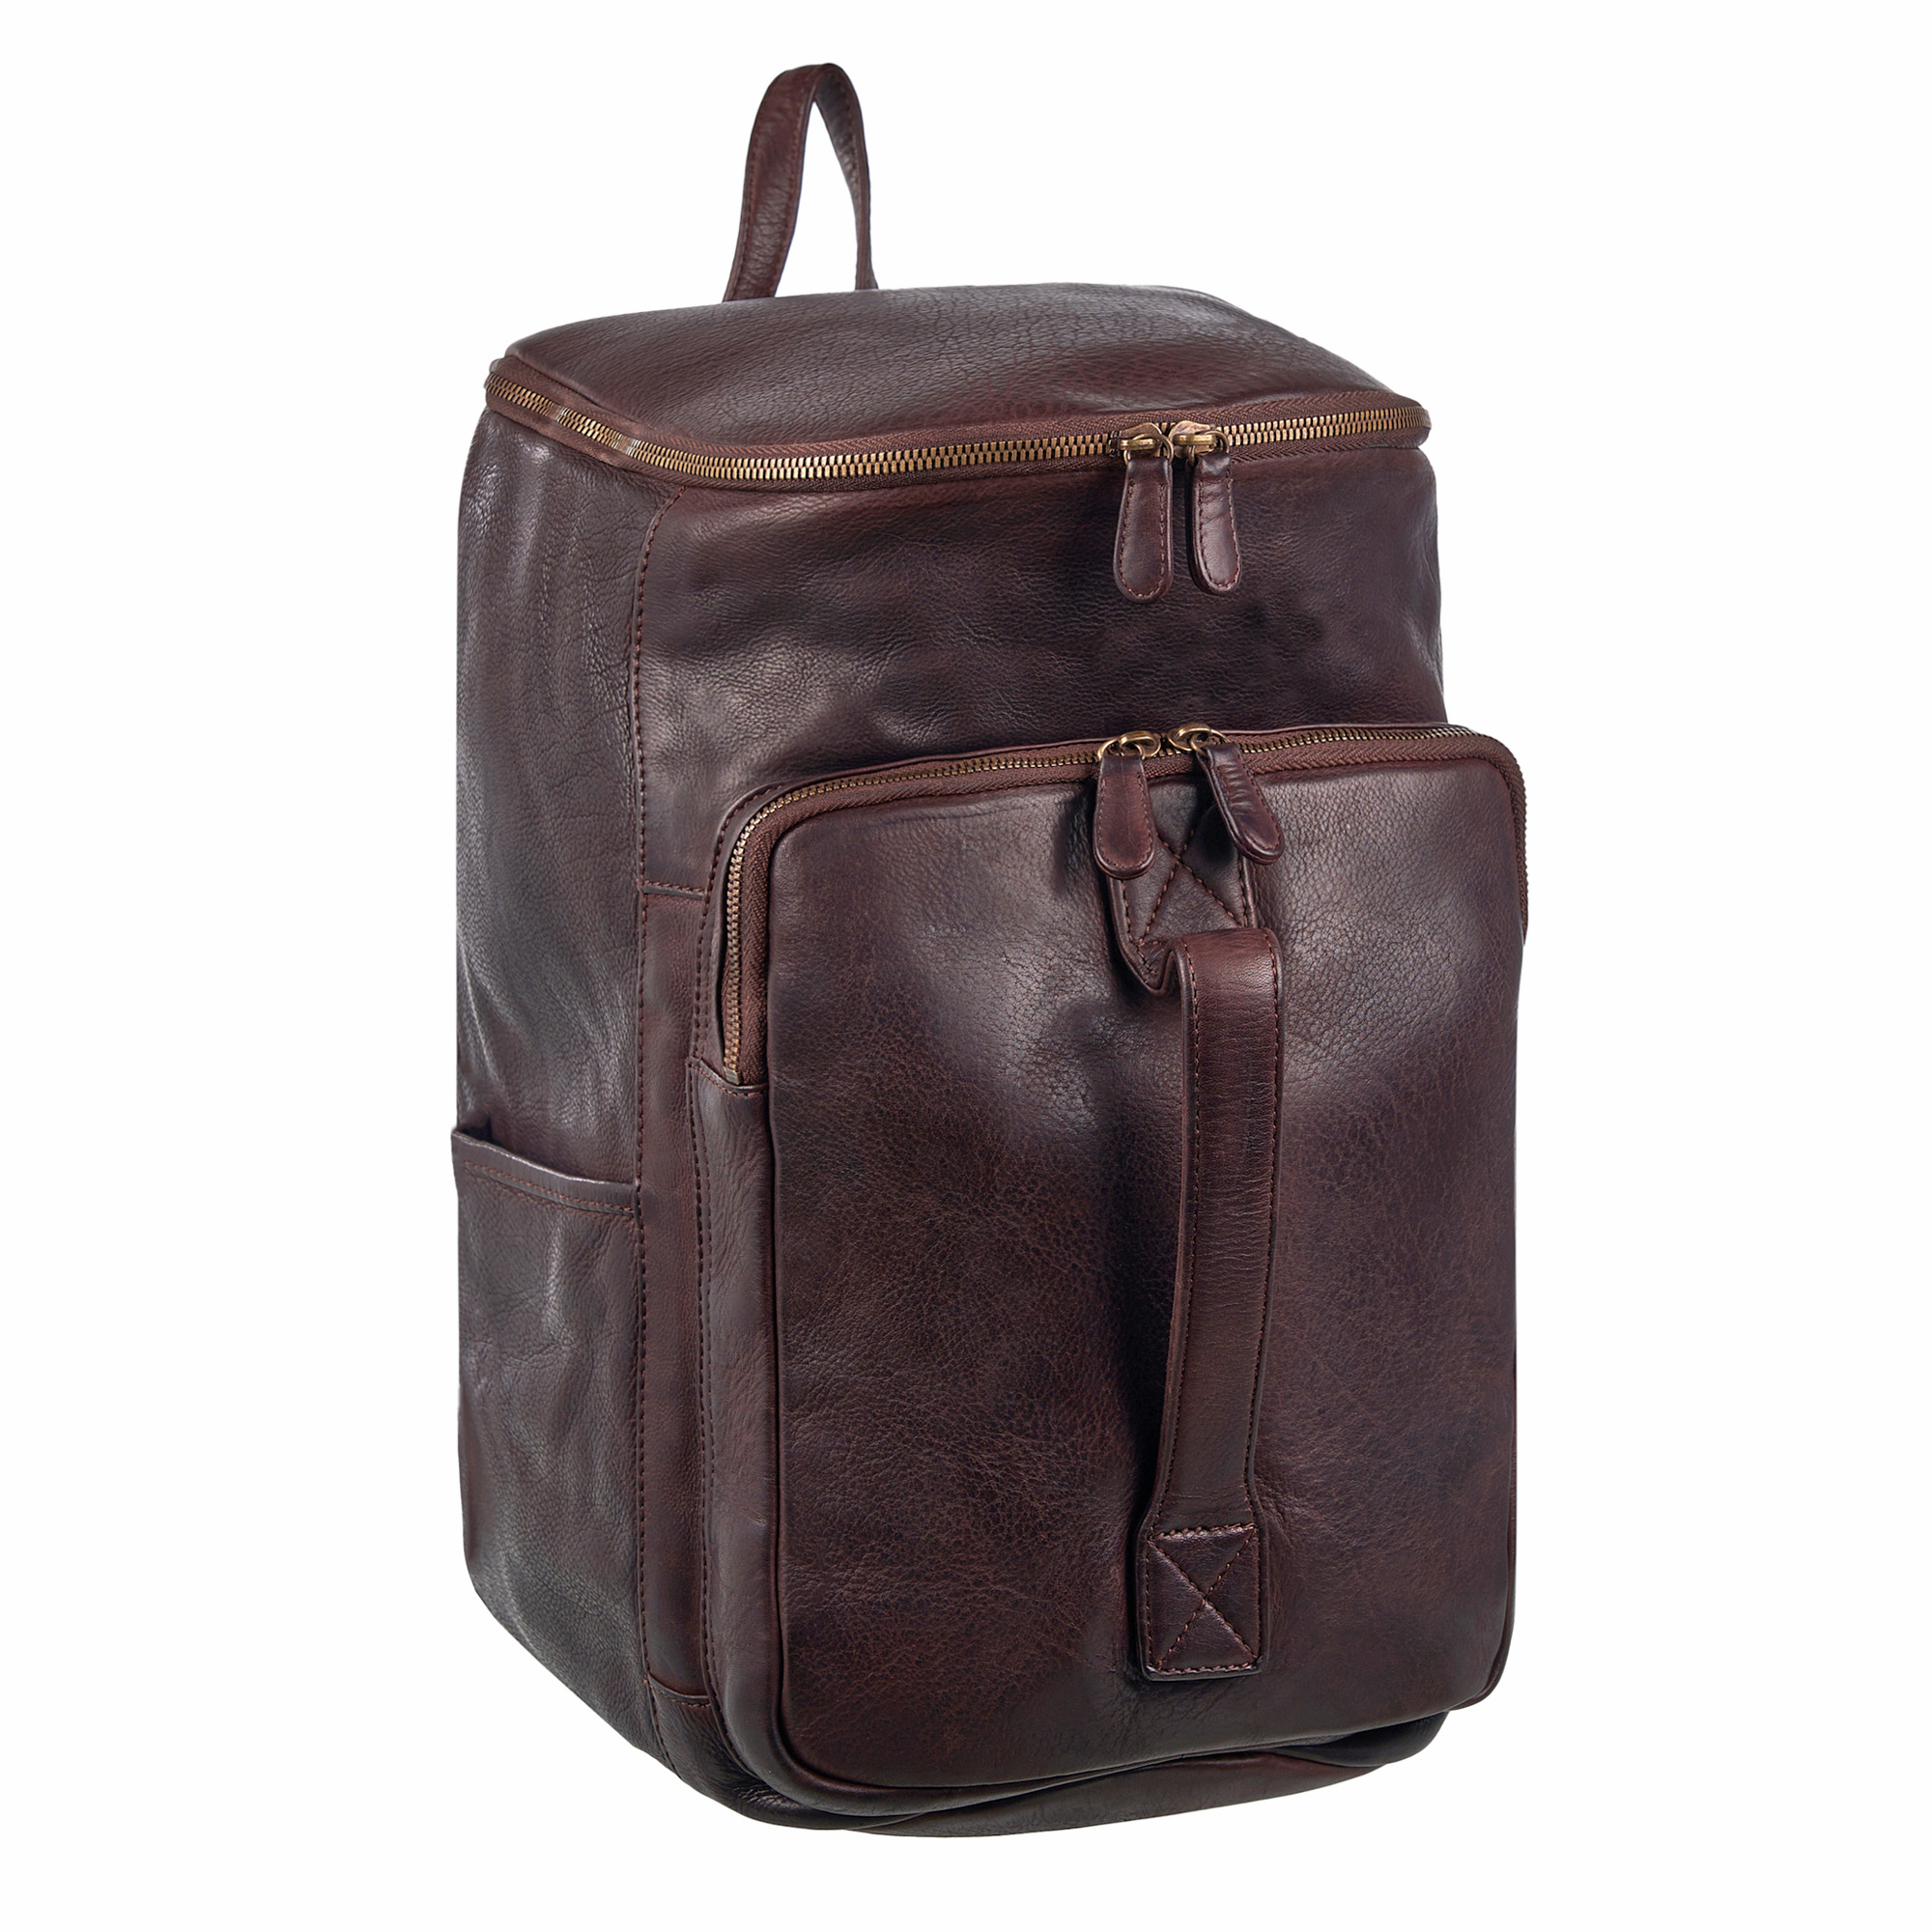 Др.Коффер B402777-248-09 рюкзак, цвет коричневый